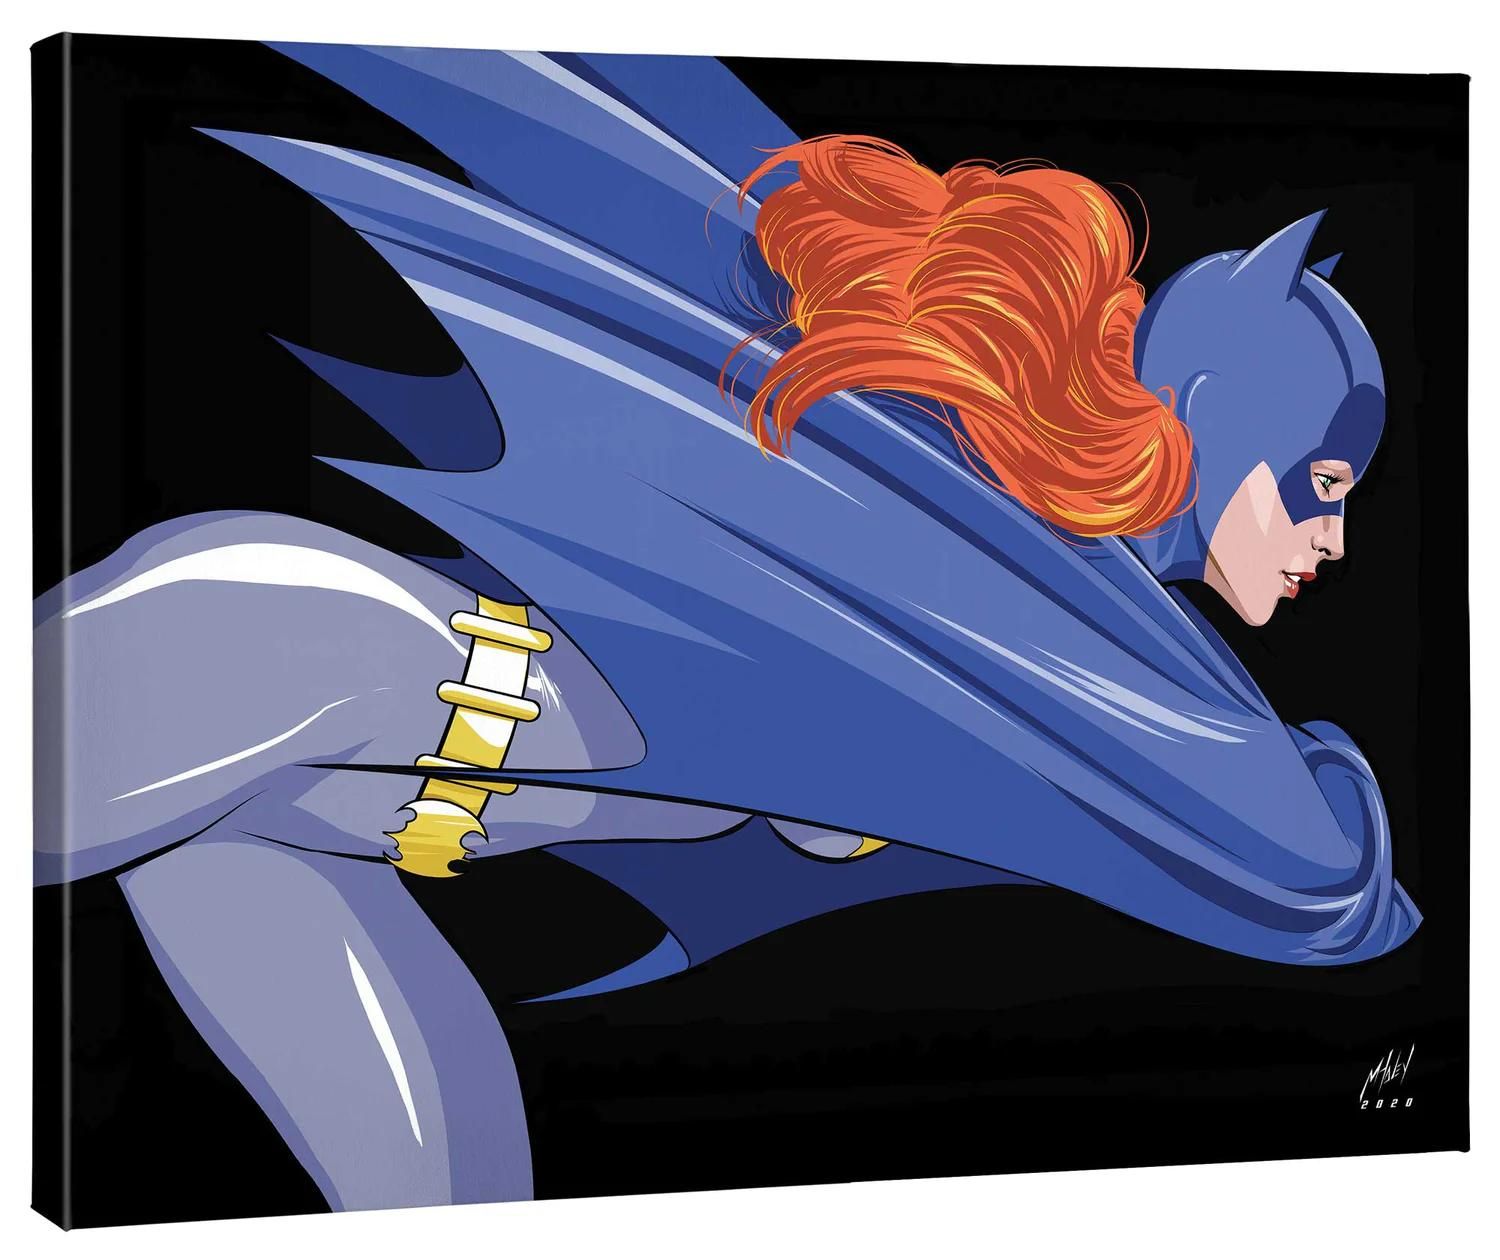 Batgirl, aka Barbara Gordon, is Gotham City's fearless female vigilante.